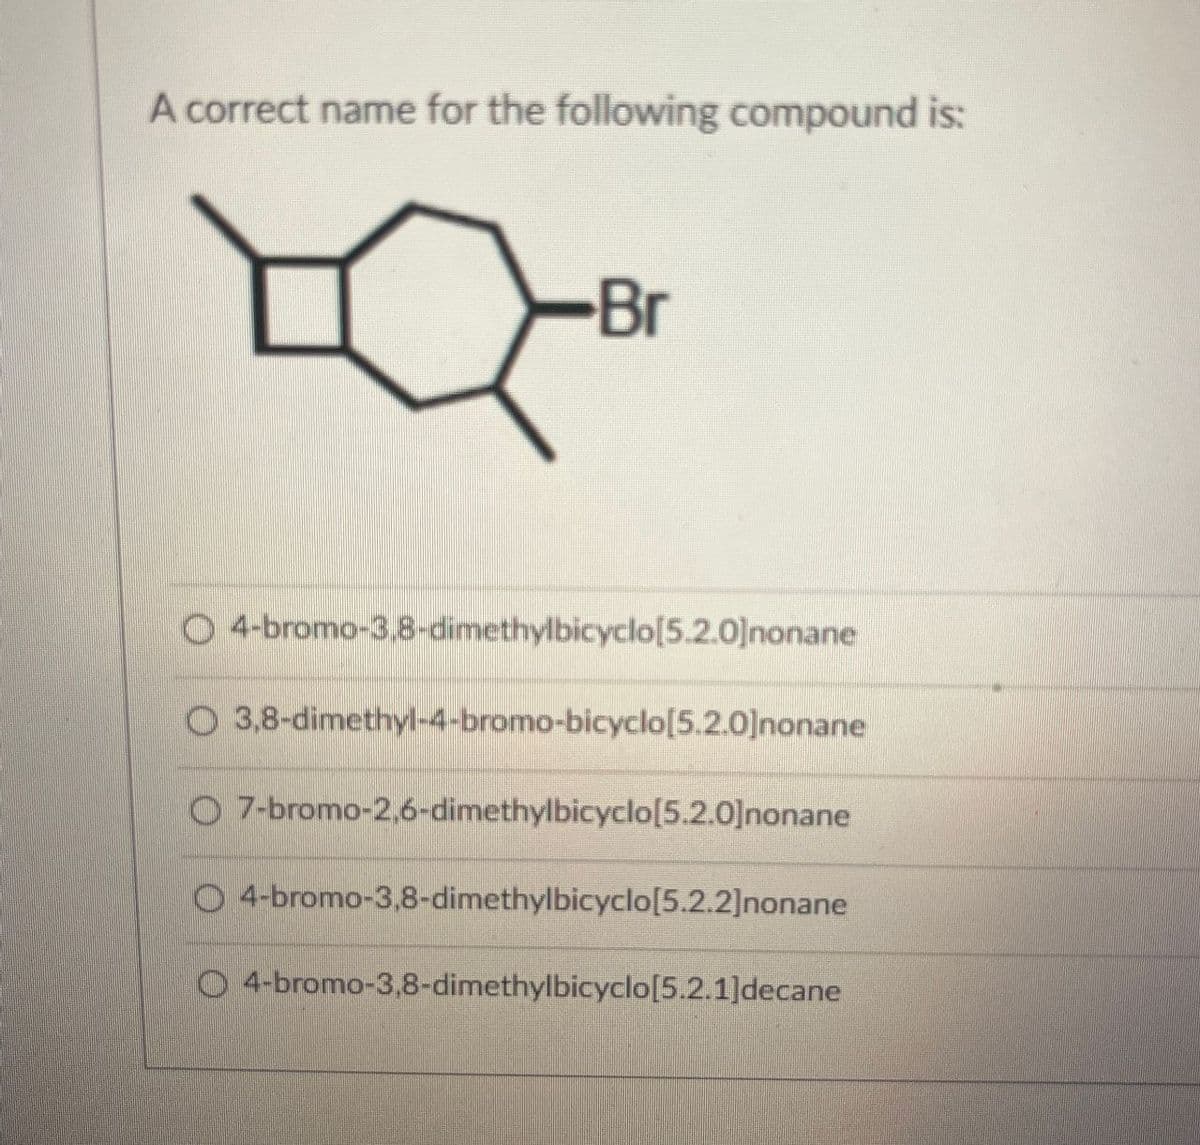 A correct name for the following compound is:
Br
O 4-bromo-3,8-dimethylbicyclo[5.2.0]nonane
O3,8-dimethyl-4-bromo-bicyclo[5.2.0]nonane
O7-bromo-2,6-dimethylbicyclo[5.2.0]nonane
O4-bromo-3,8-dimethylbicyclo[5.2.2]nonane
O
4-bromo-3,8-dimethylbicyclo[5.2.1]decane